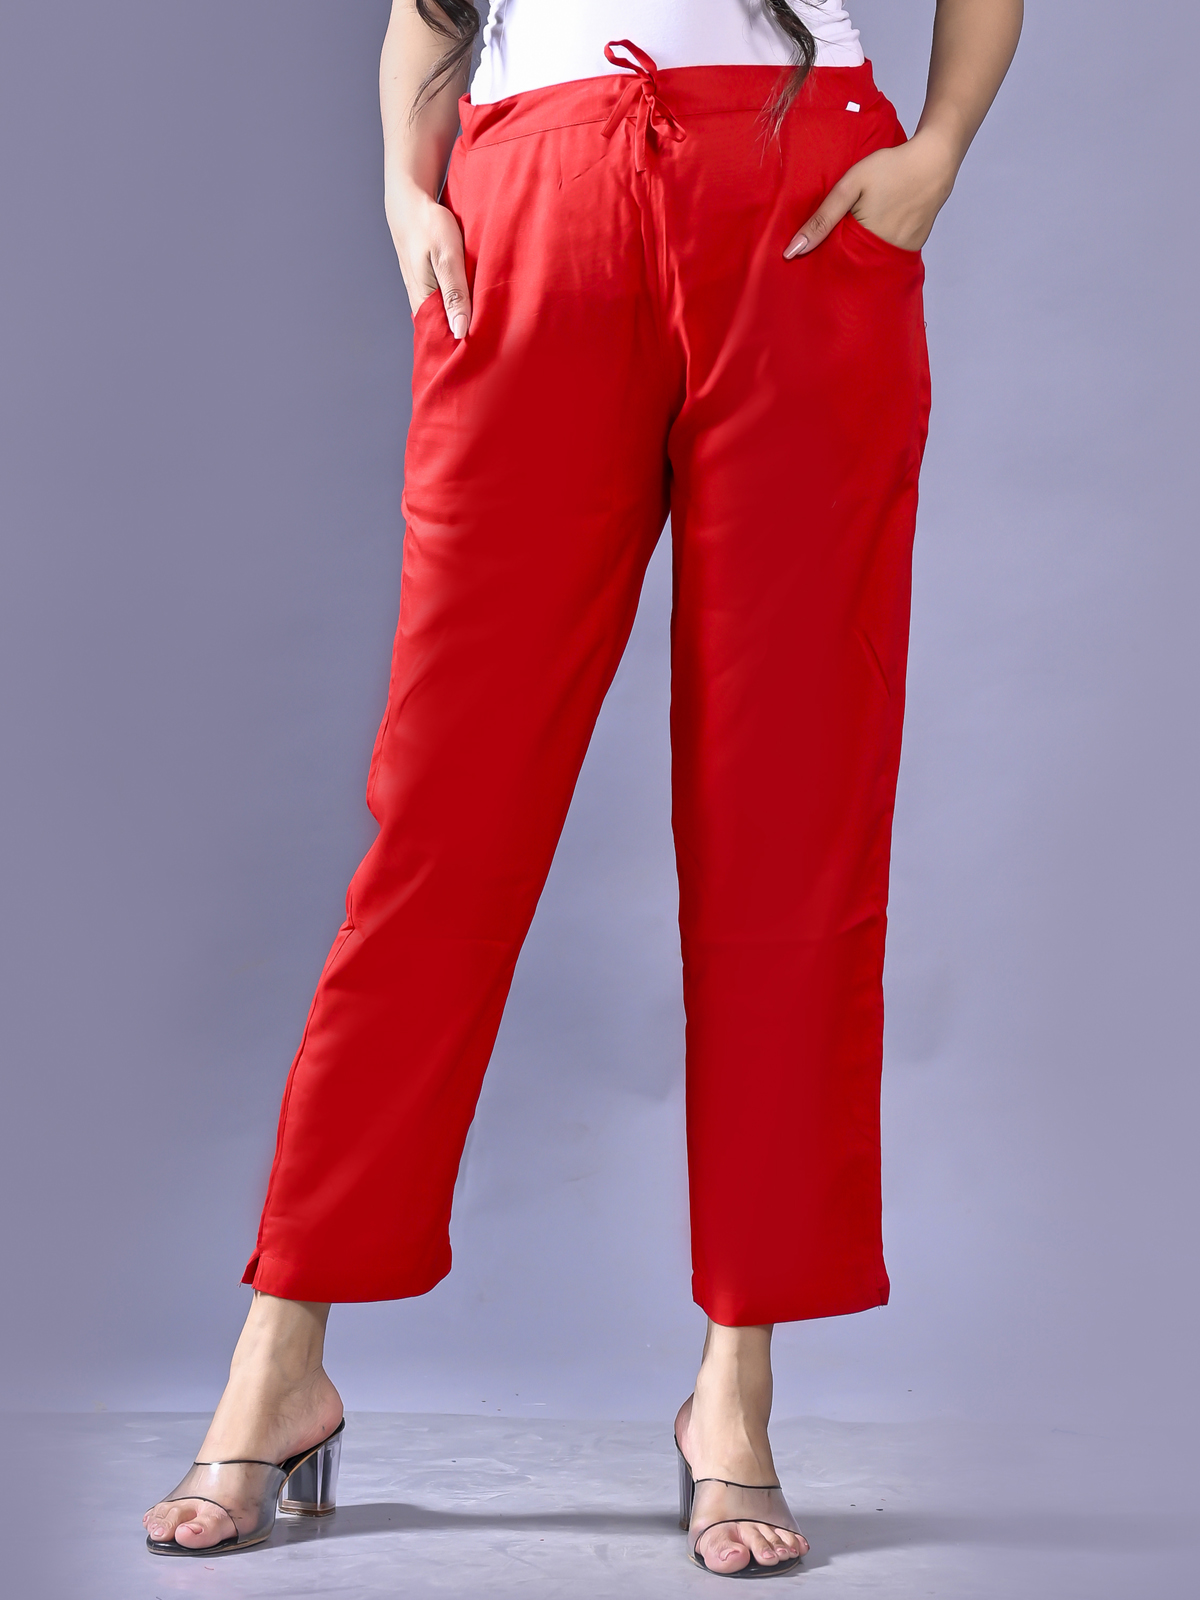 Womens Duty Pants - Women's Side-Pocket Rayon Pants - 8980W - Blauer